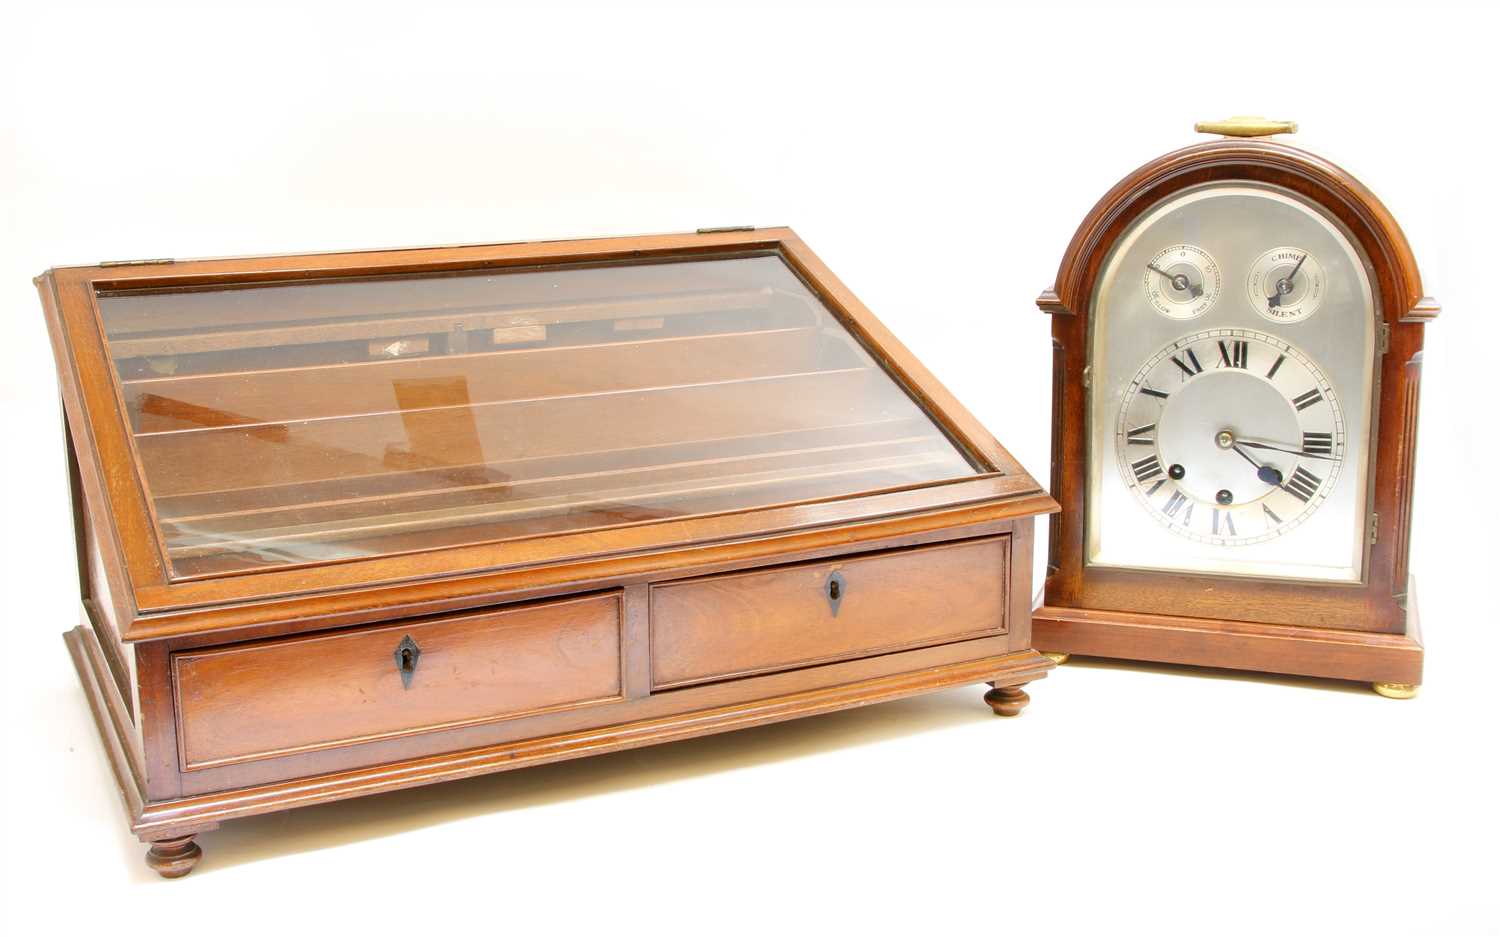 Lot 160 - A 19th century mahogany table display case